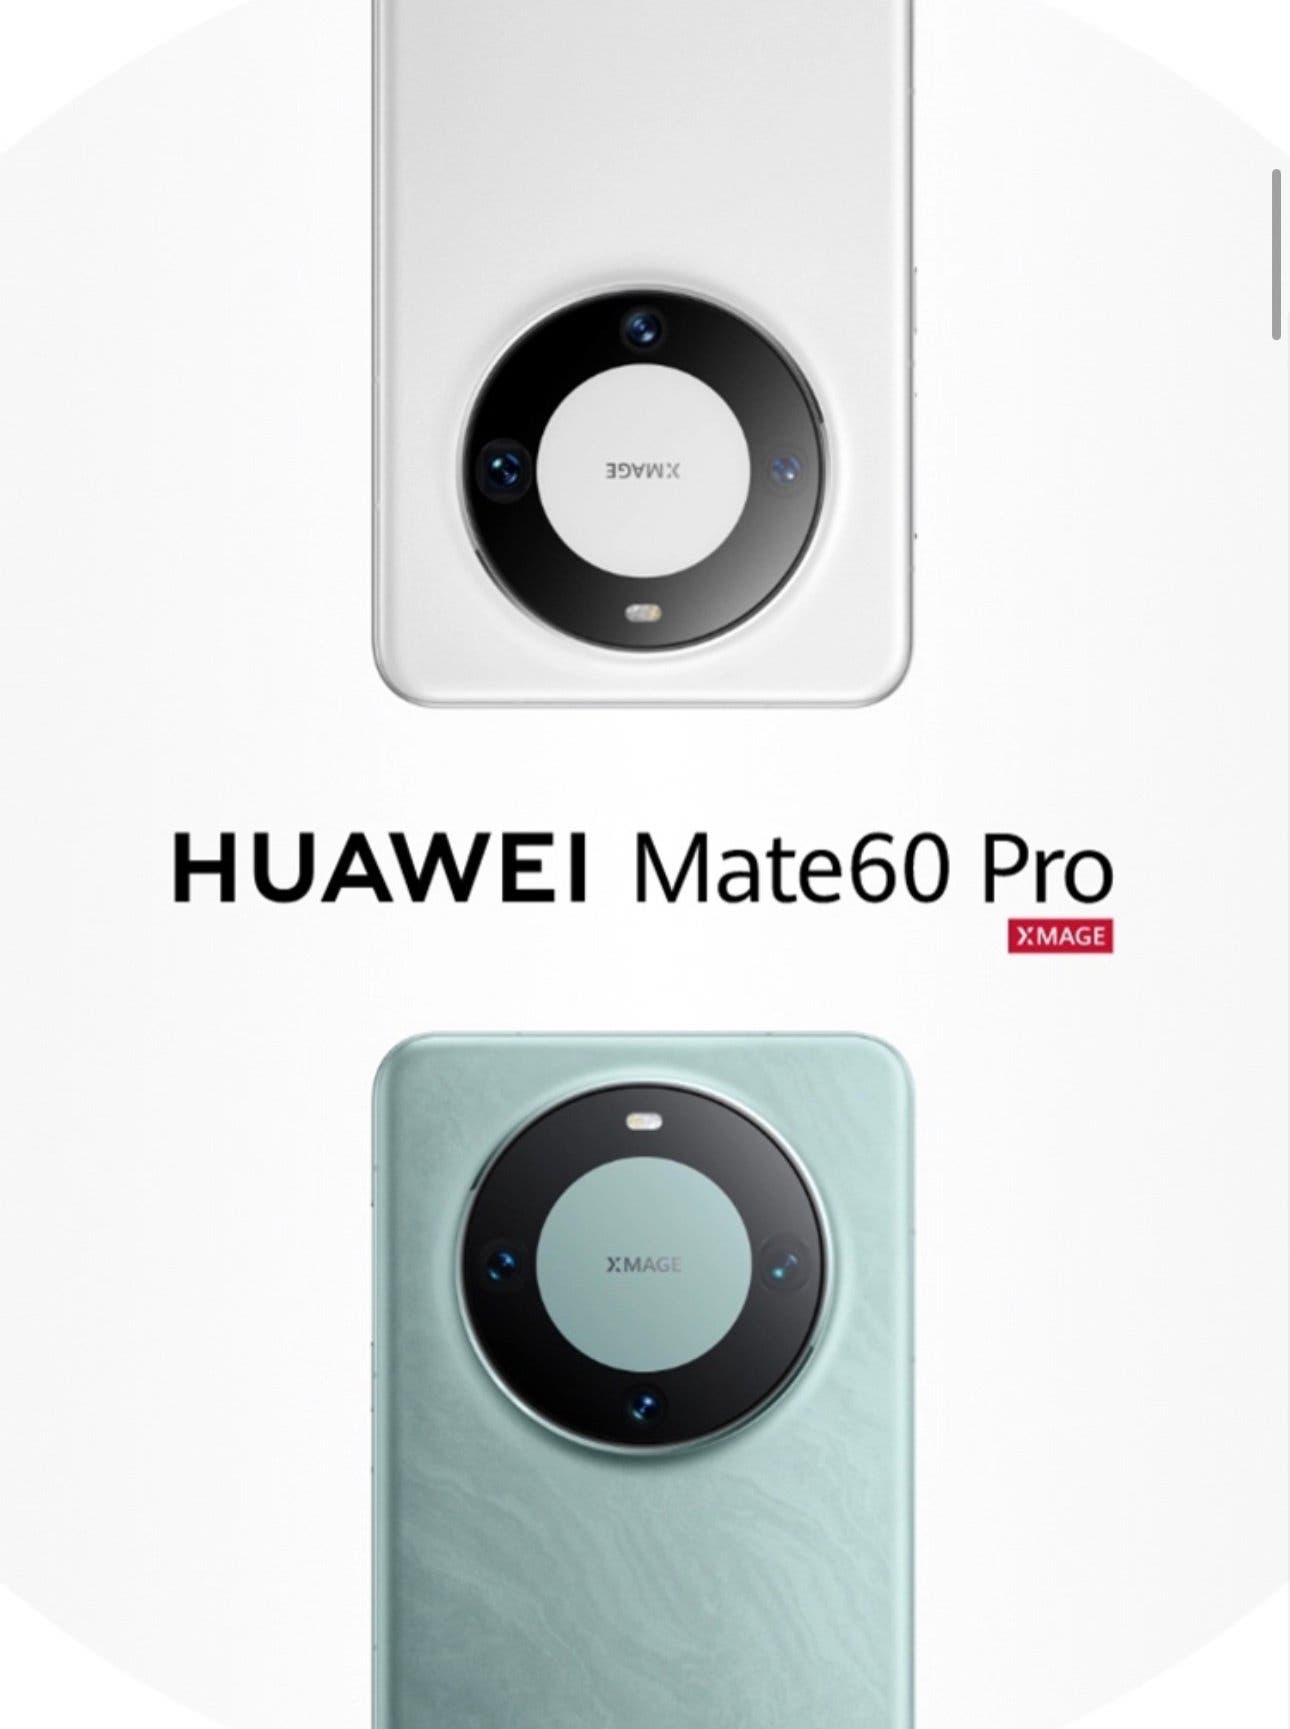 Huawei Mate 60 Pro: características, especificaciones y precios